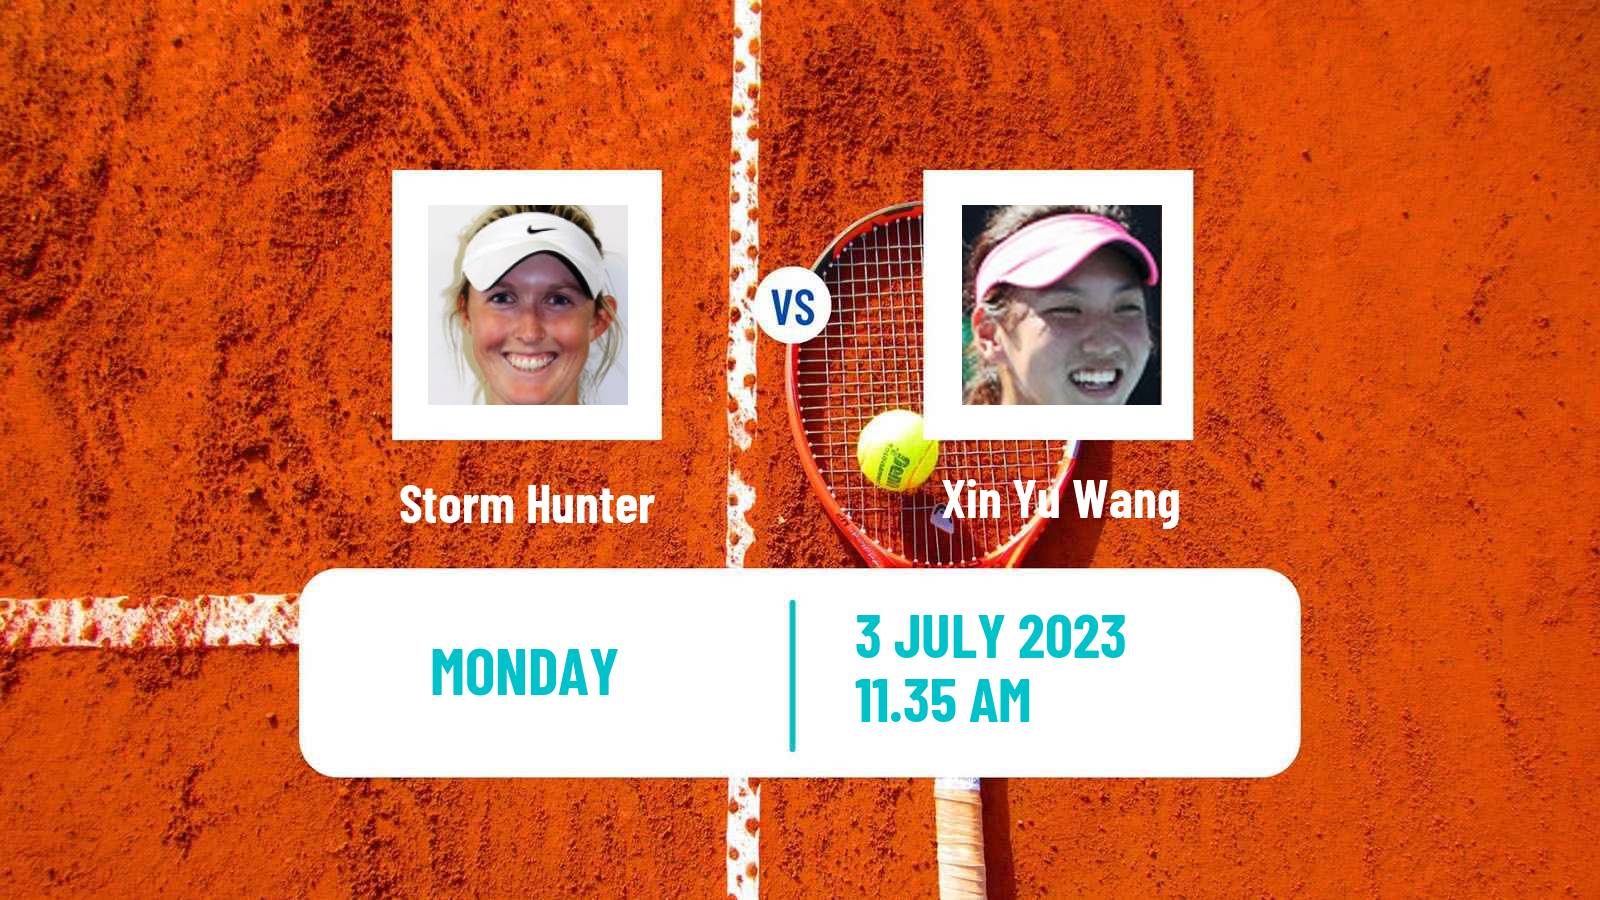 Tennis WTA Wimbledon Storm Hunter - Xin Yu Wang